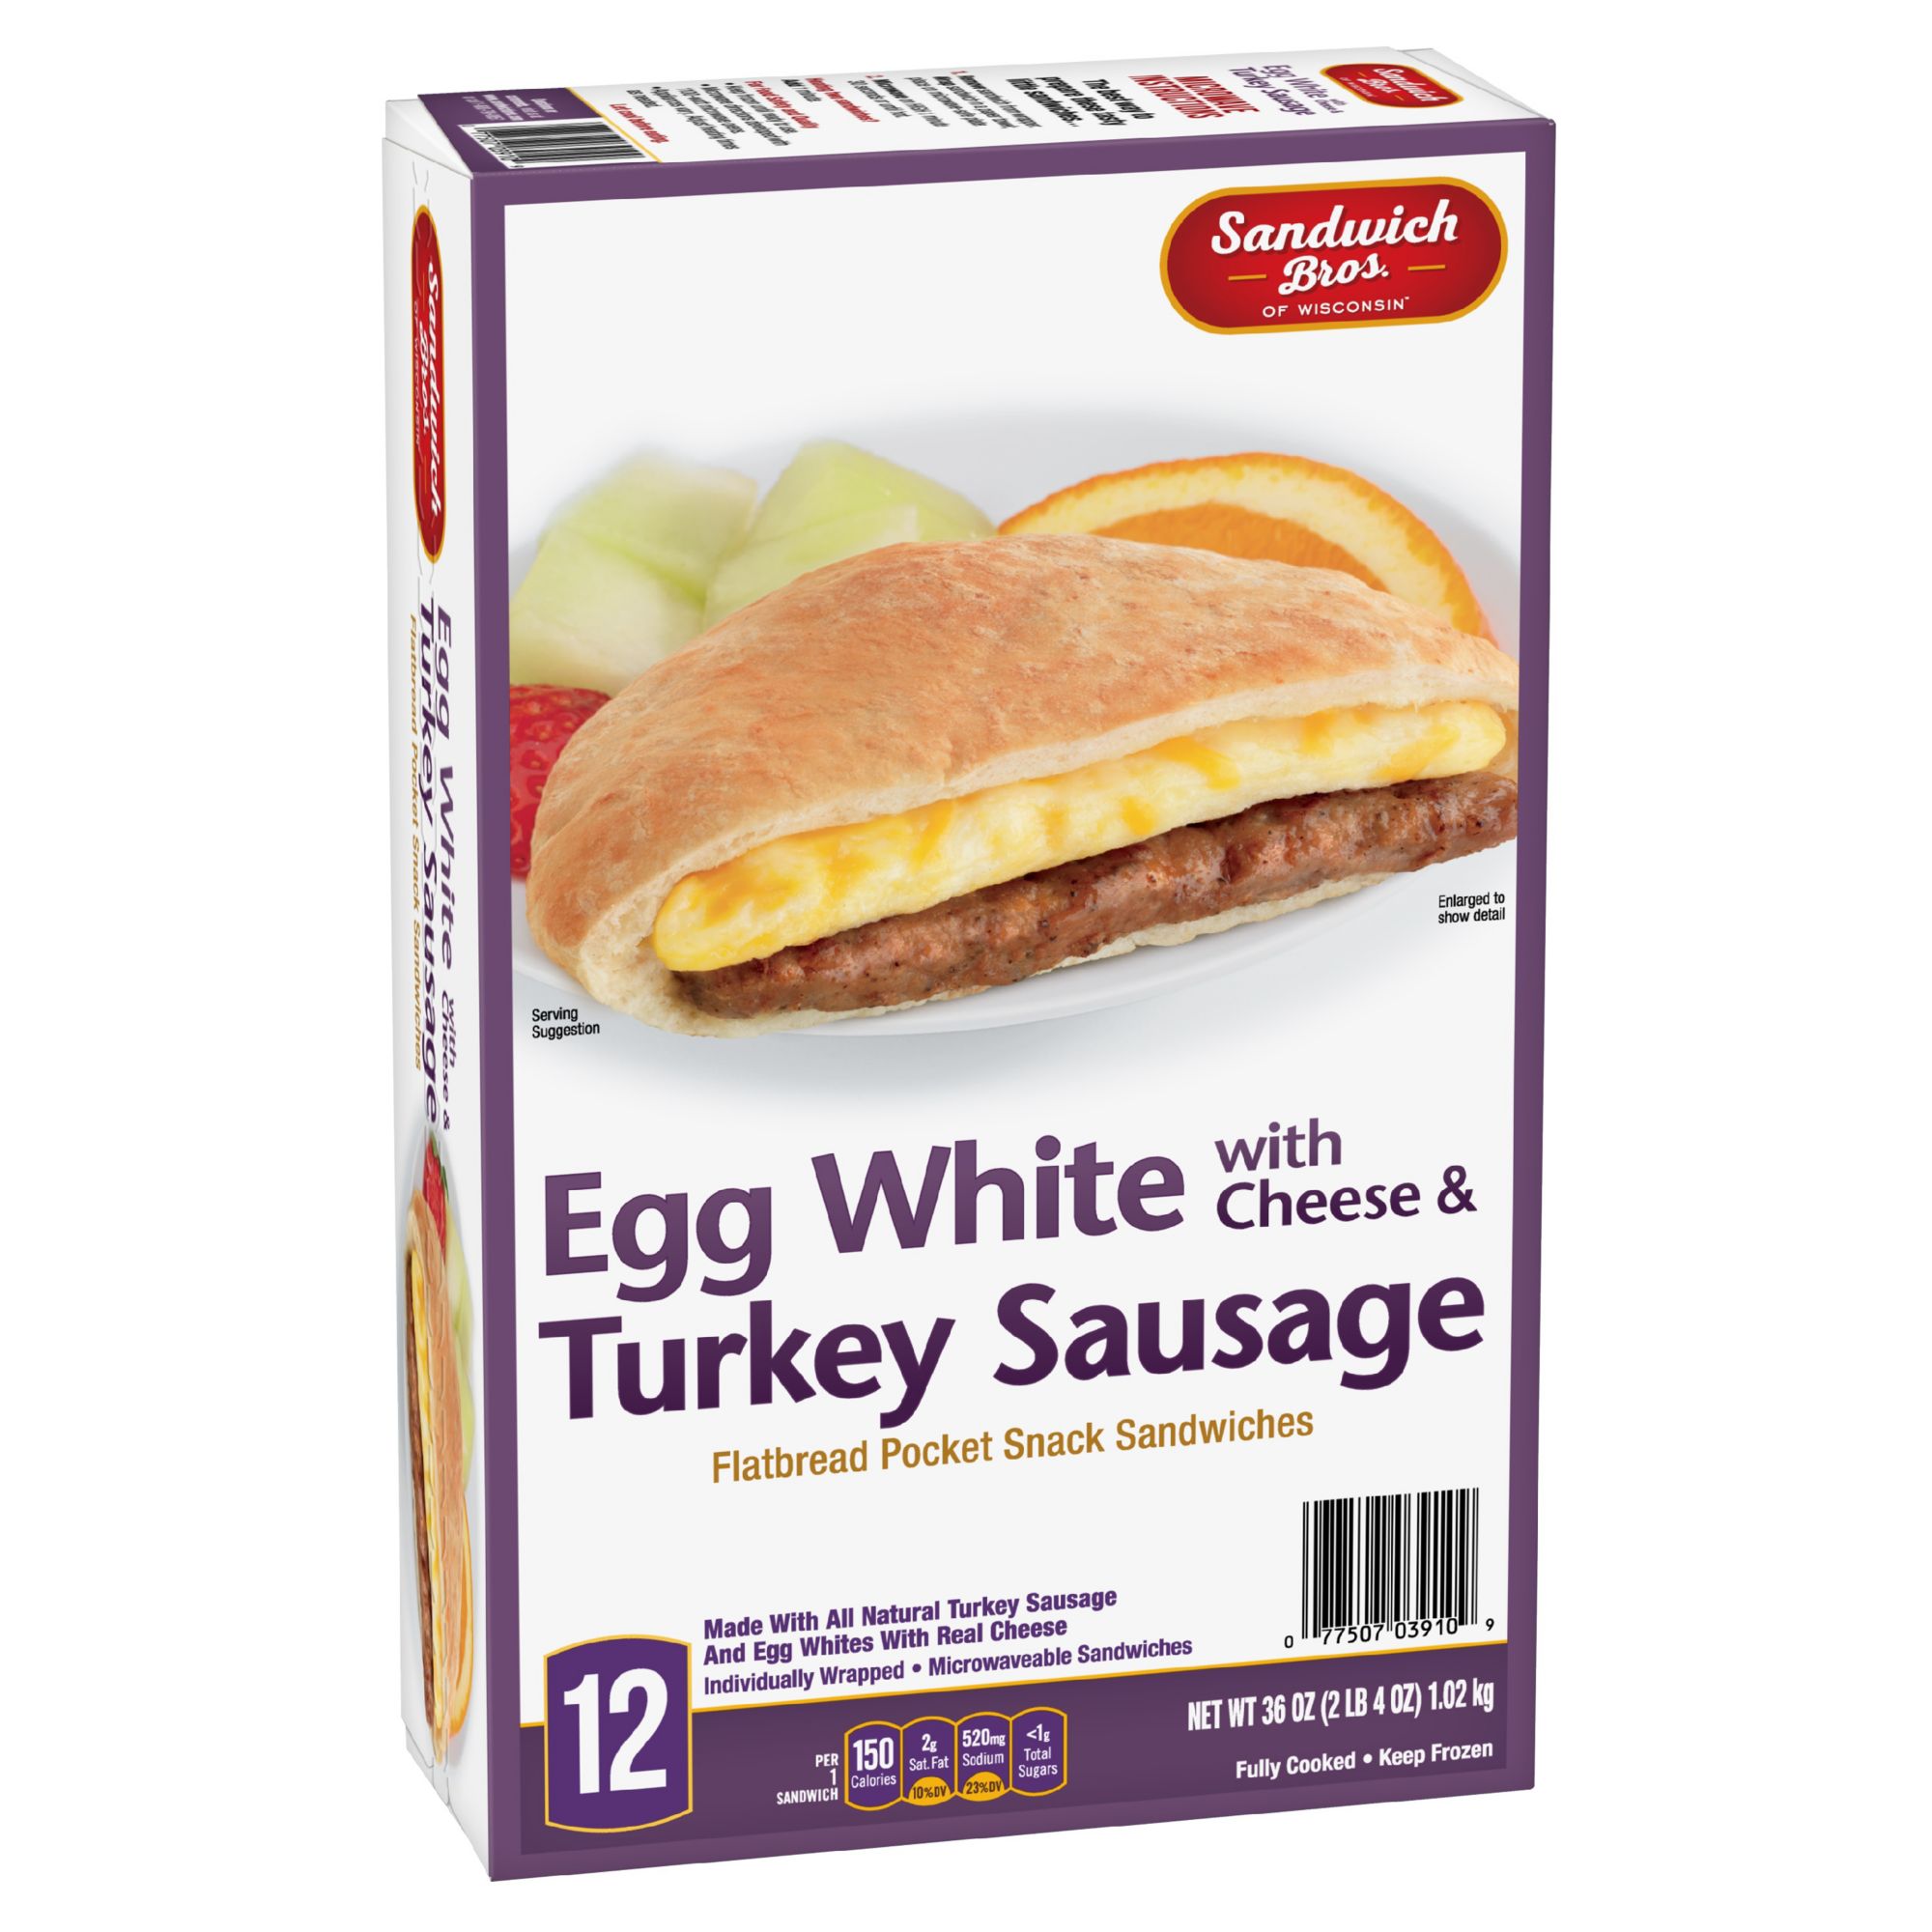 Egg White & Turkey Sausage Breakfast Sandwiches